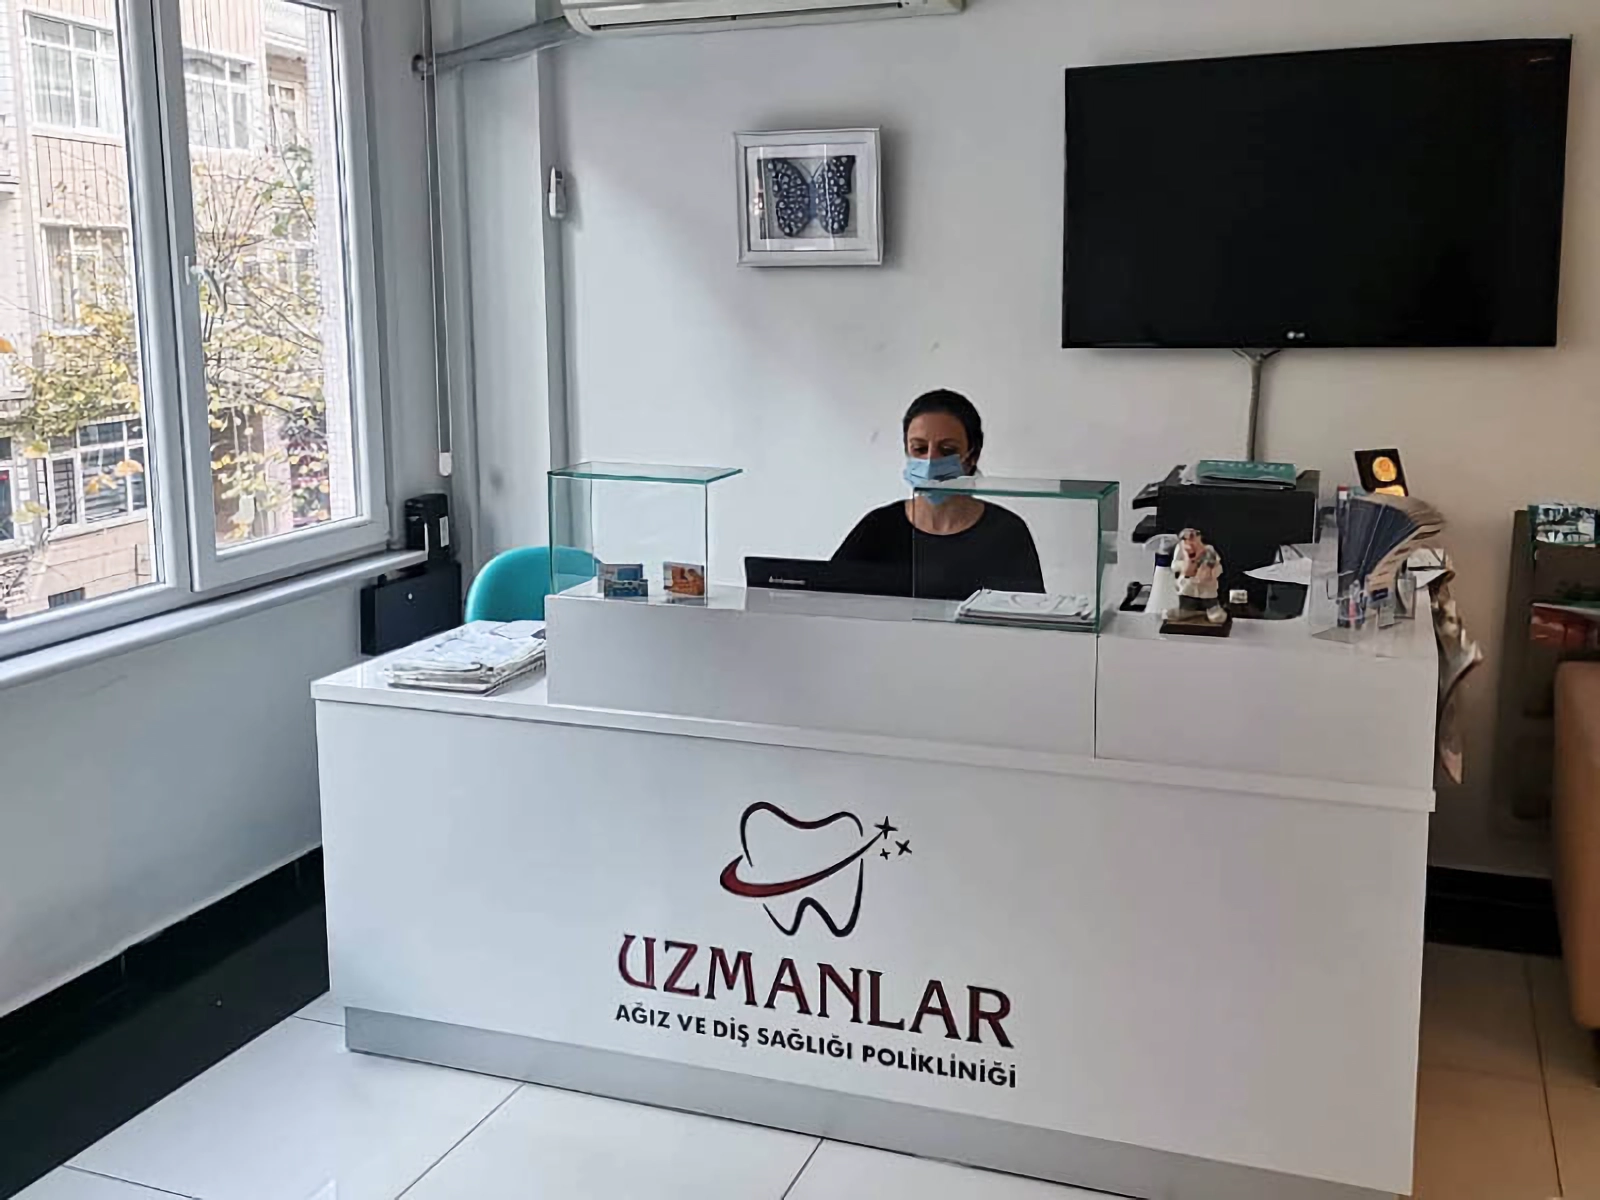 Администратор в клинике Uzmanlar в Стамбуле